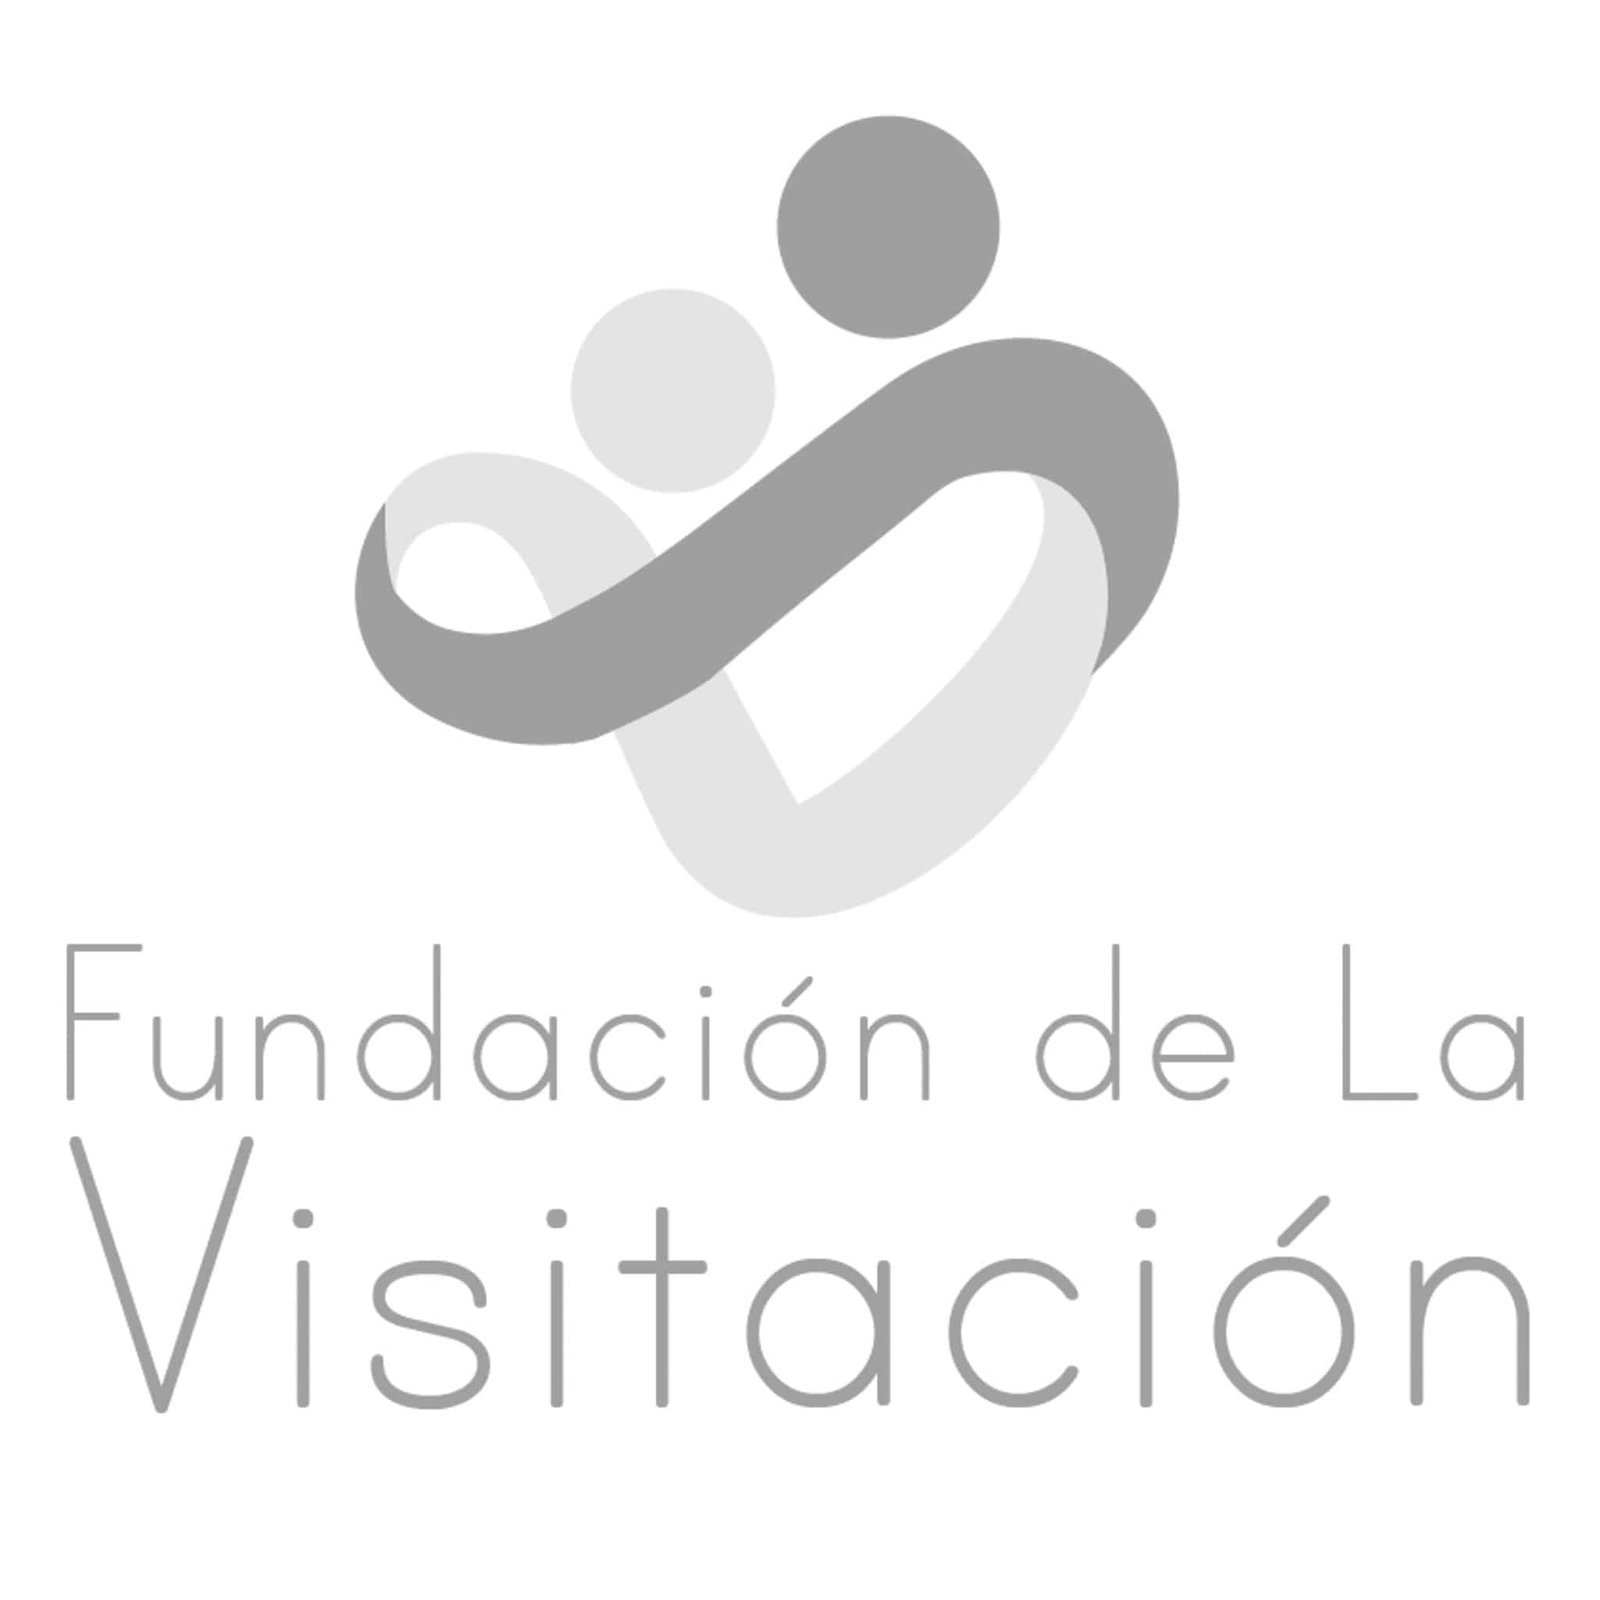 logo Fundacion de la Visitacion 01